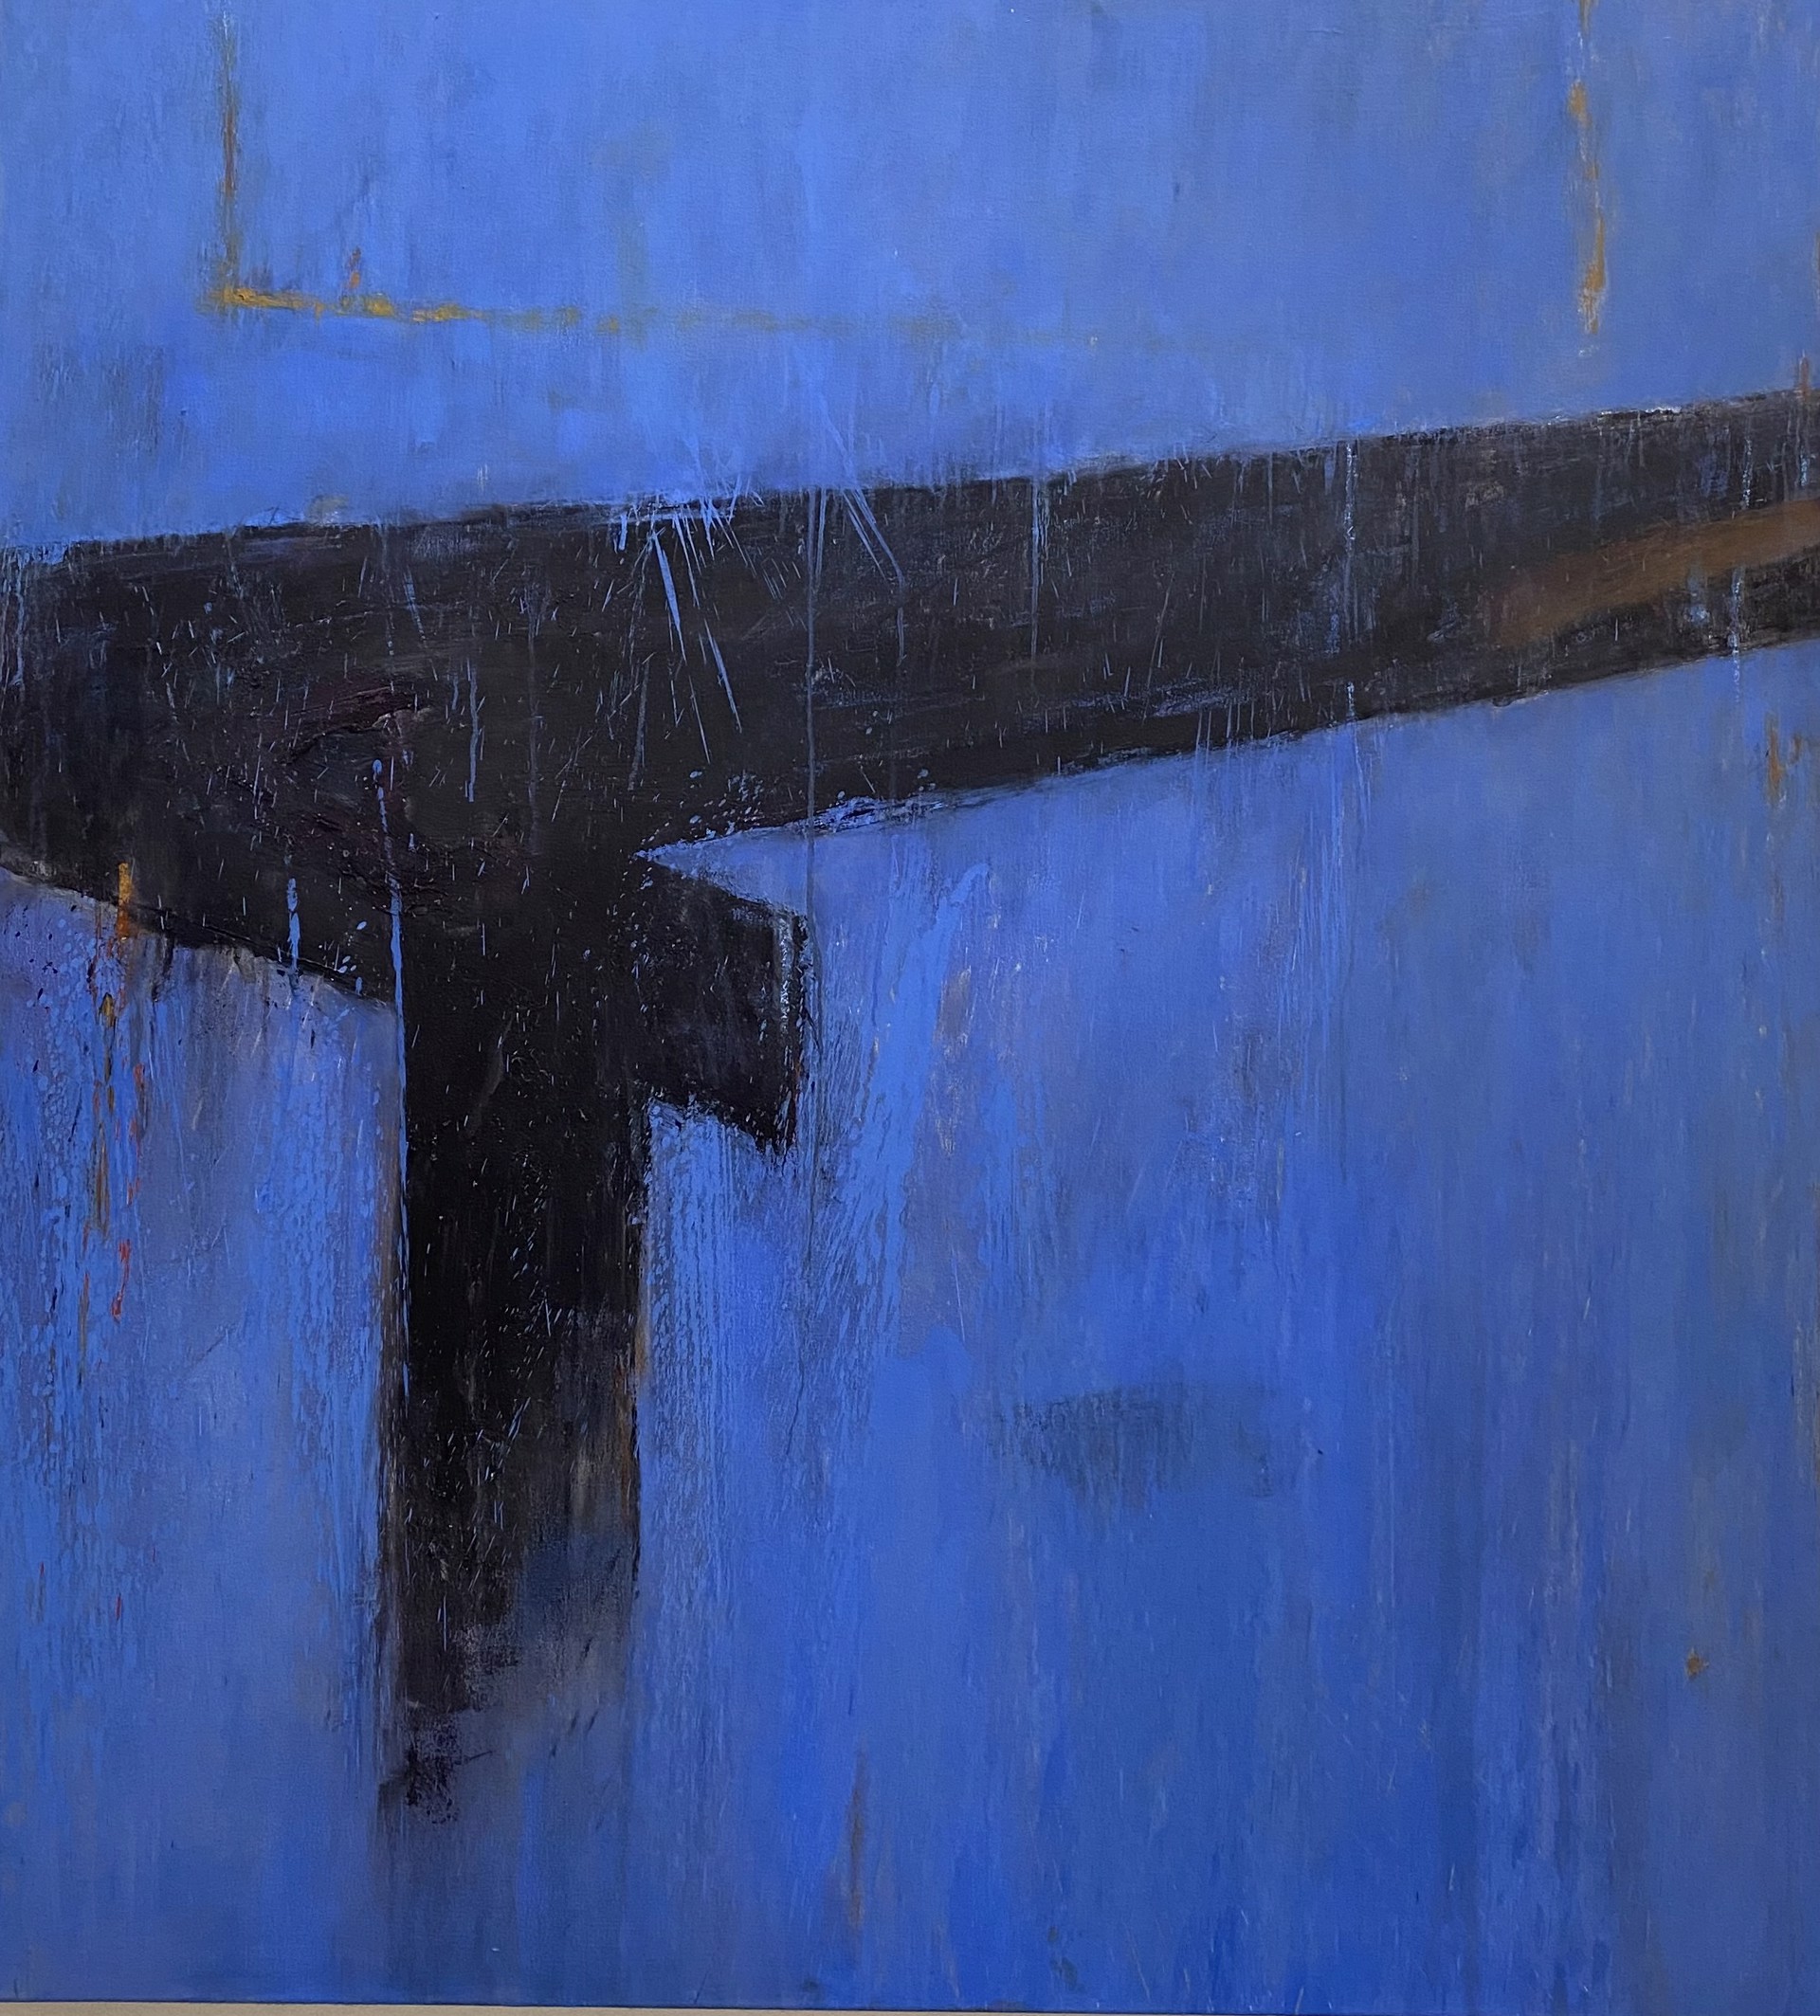 Blue Train by Tony Magar